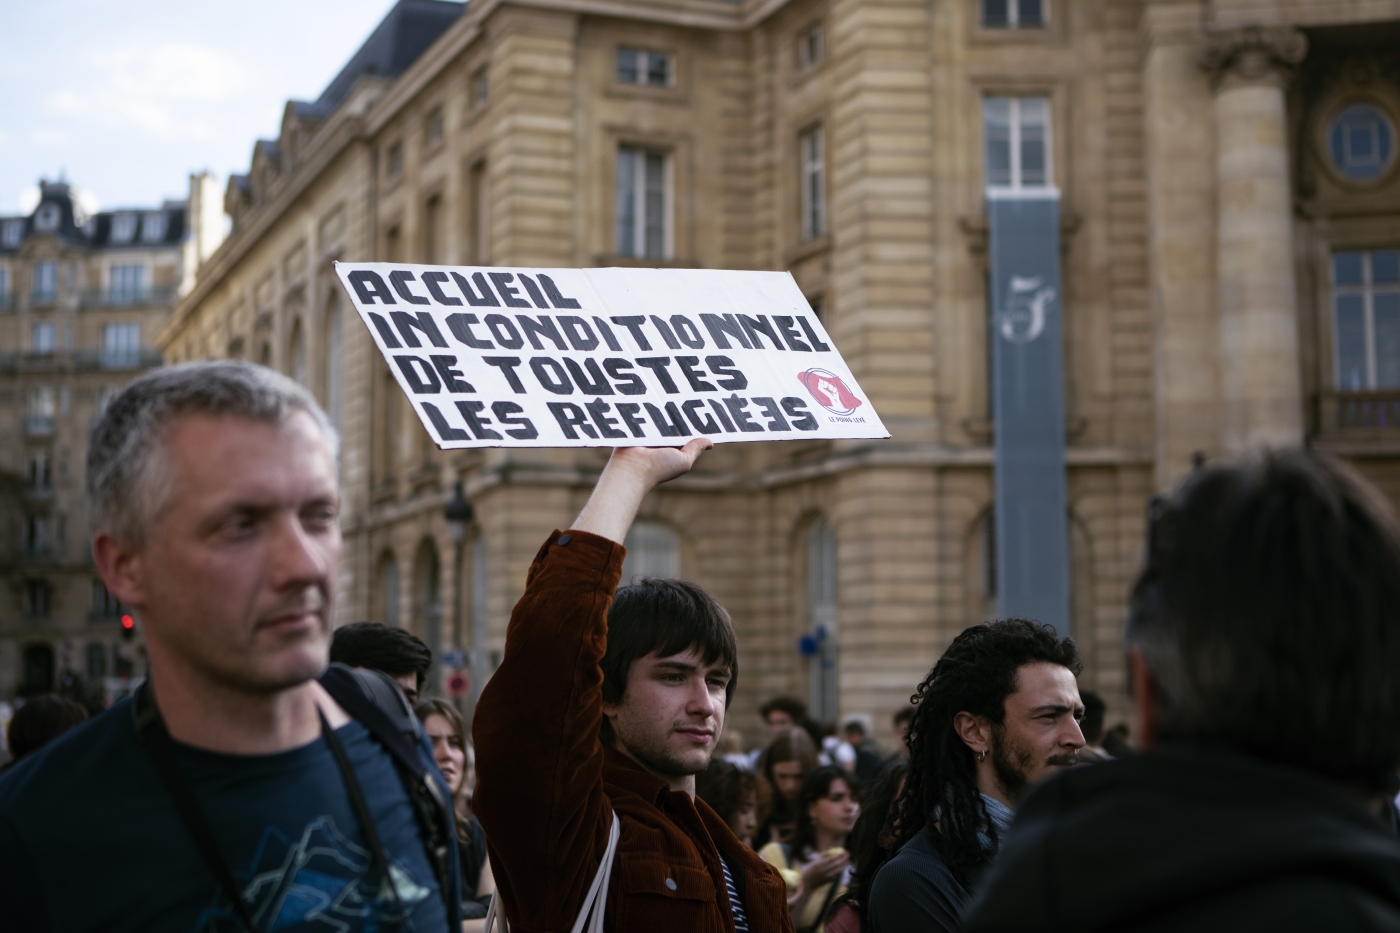  Le 14 avril 2022, des centaines de personnes se sont rassemblées à Paris Place du Panthéon afin de demander que tous les étudiants réfugiés en provenance d’Ukraine, quelle que soit leur nationalité, puissent poursuivre leur cursus (Reuters/ Noémie Coissac)